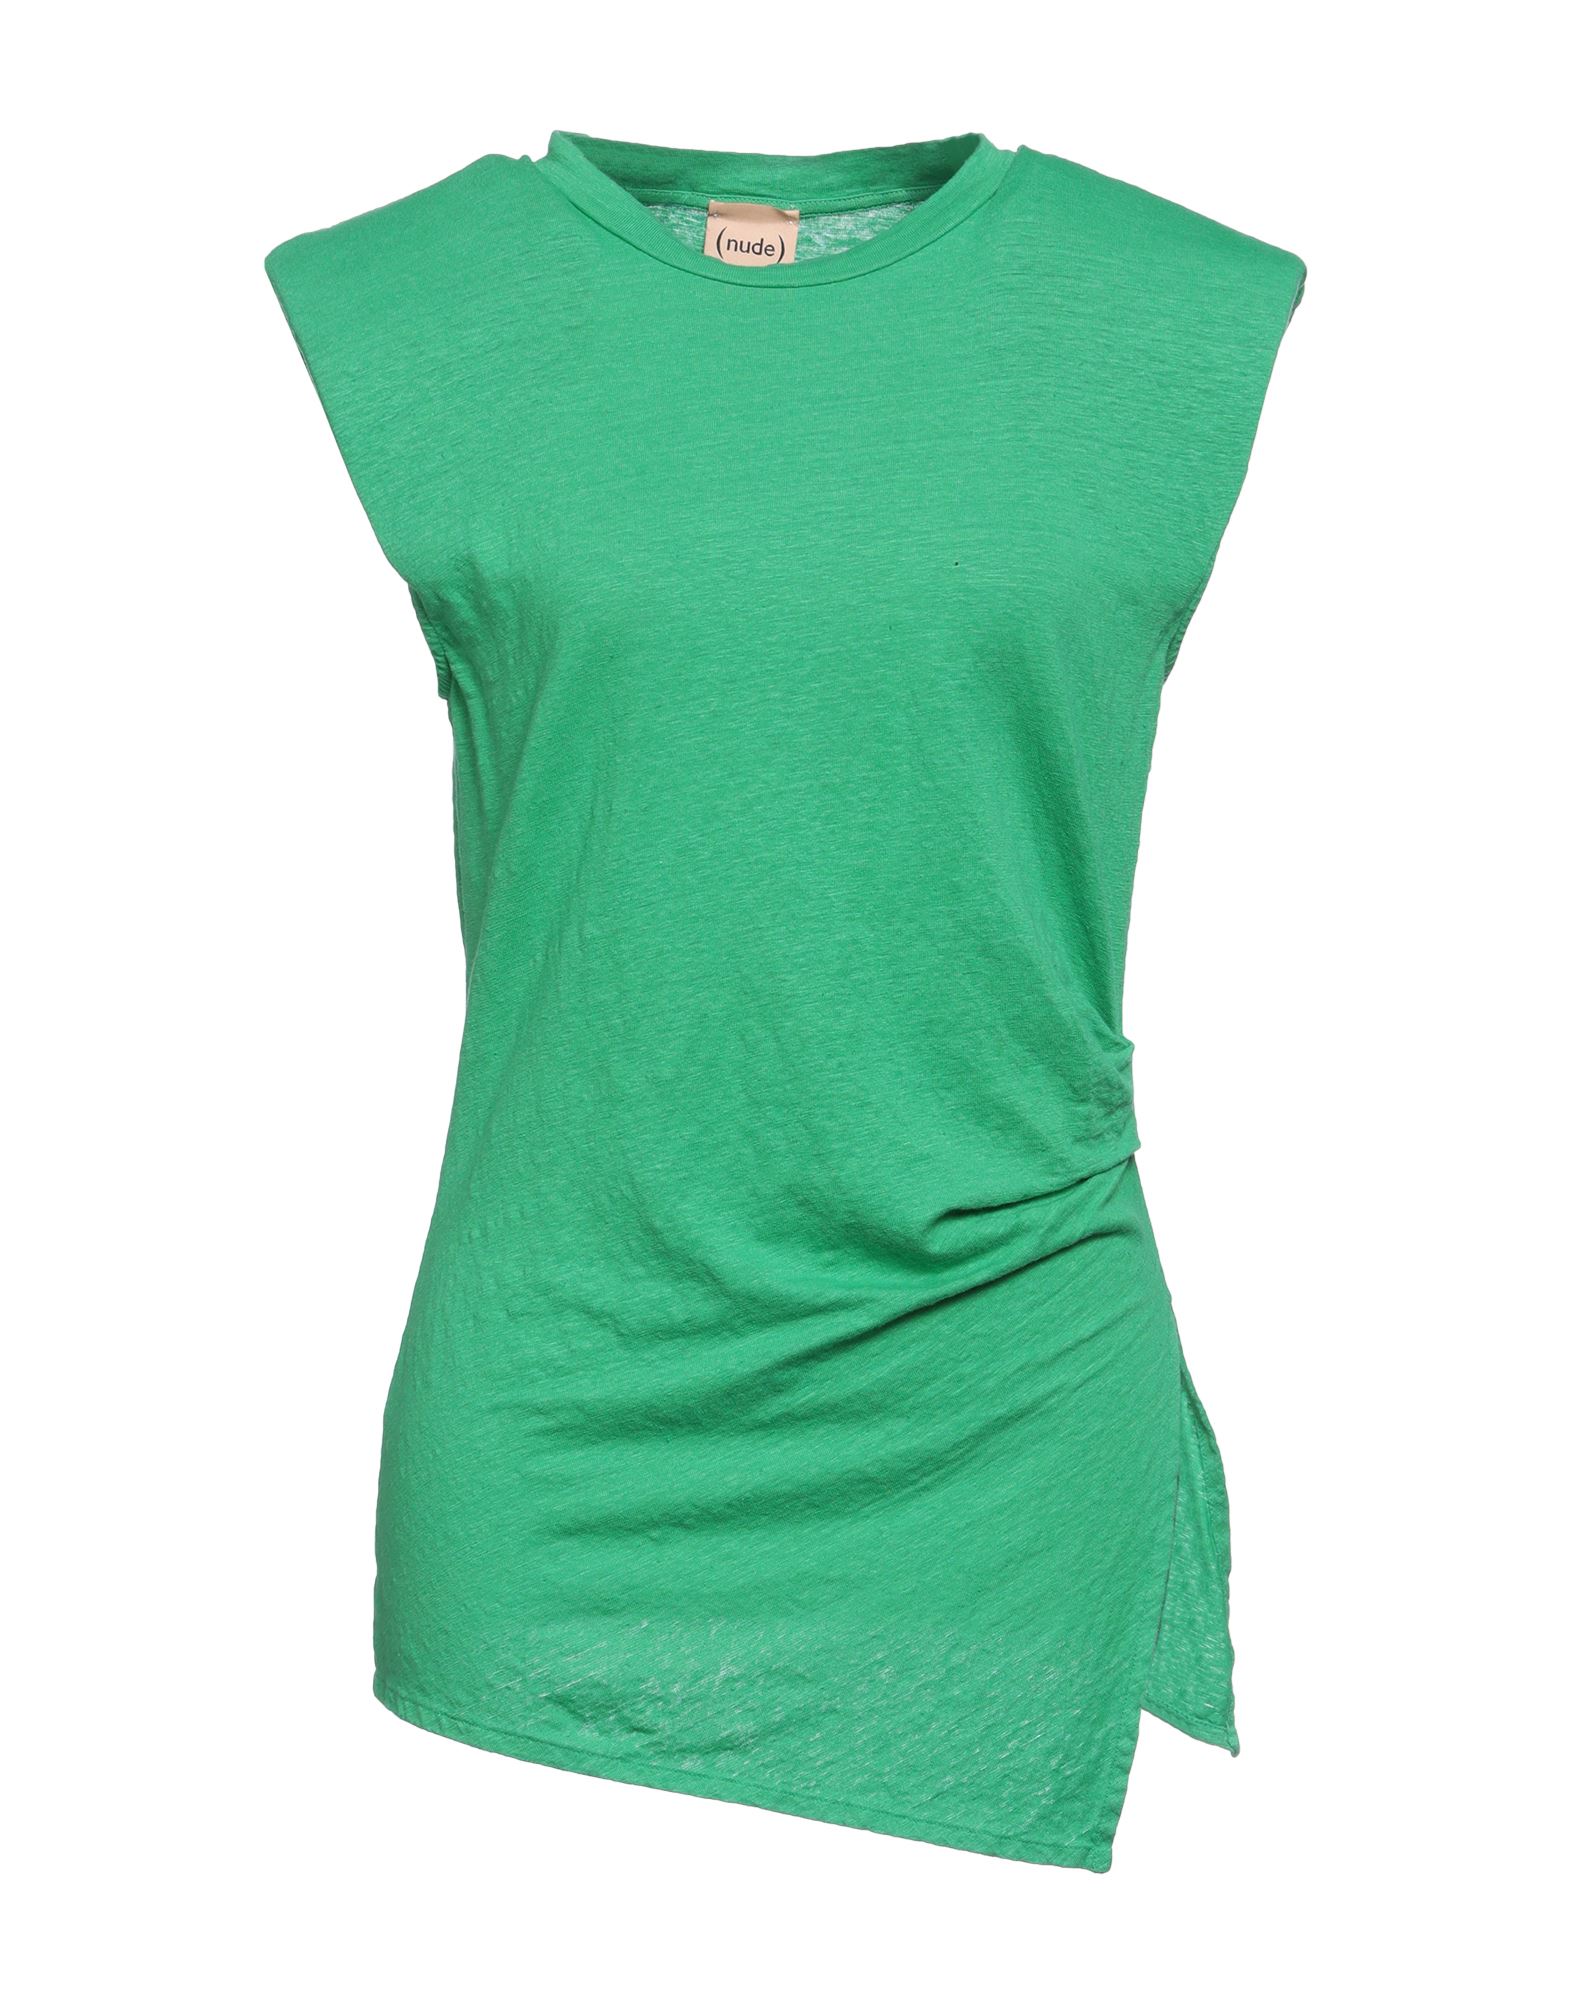 Shop Nude Woman T-shirt Emerald Green Size 6 Linen, Elastane